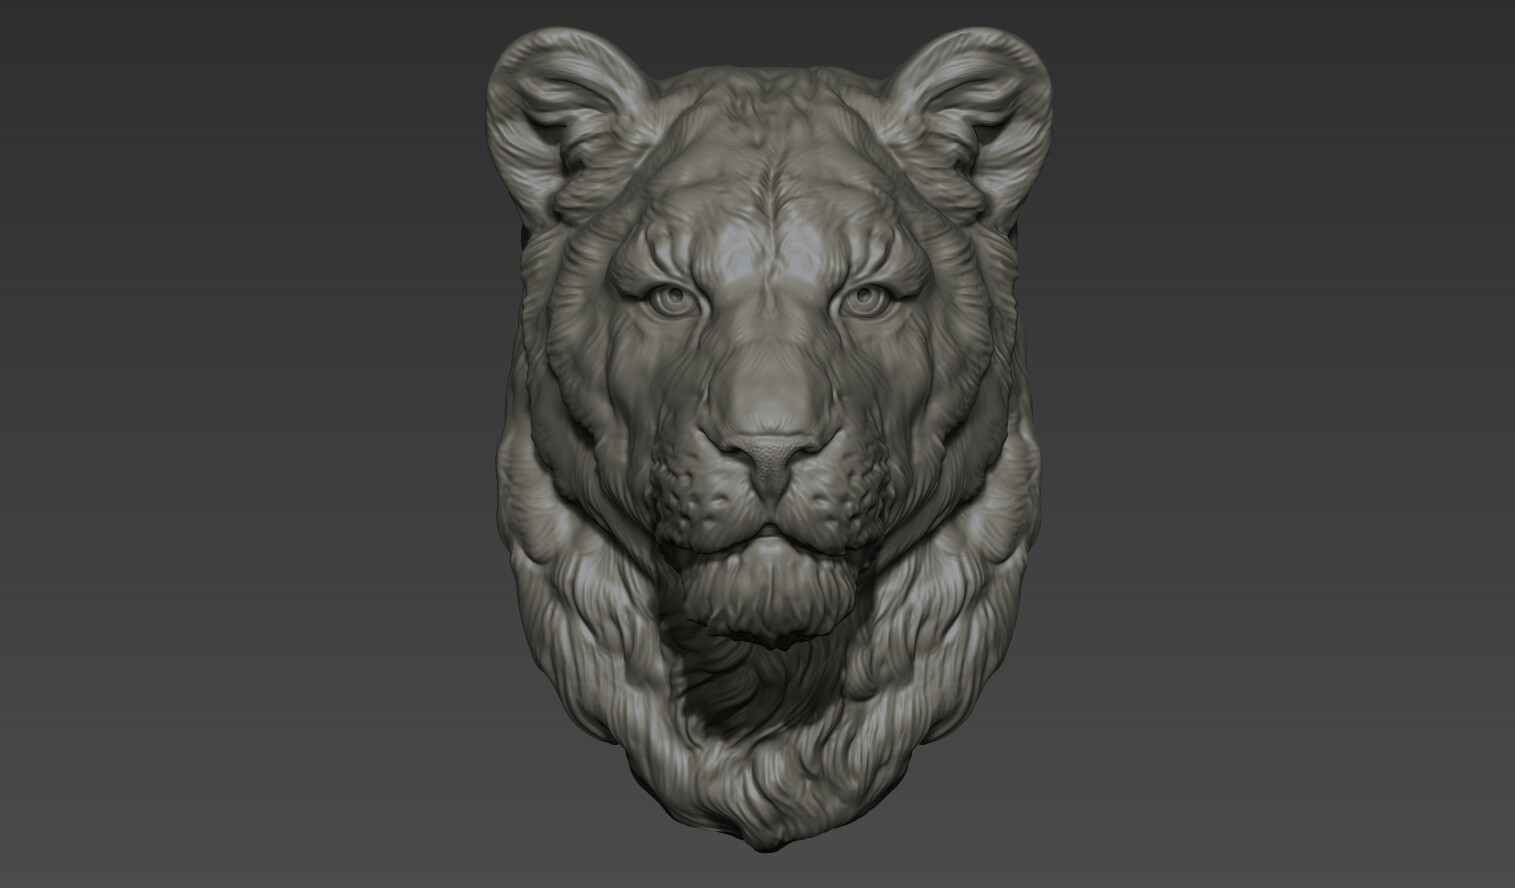 ArtStation - Lioness head | Resources